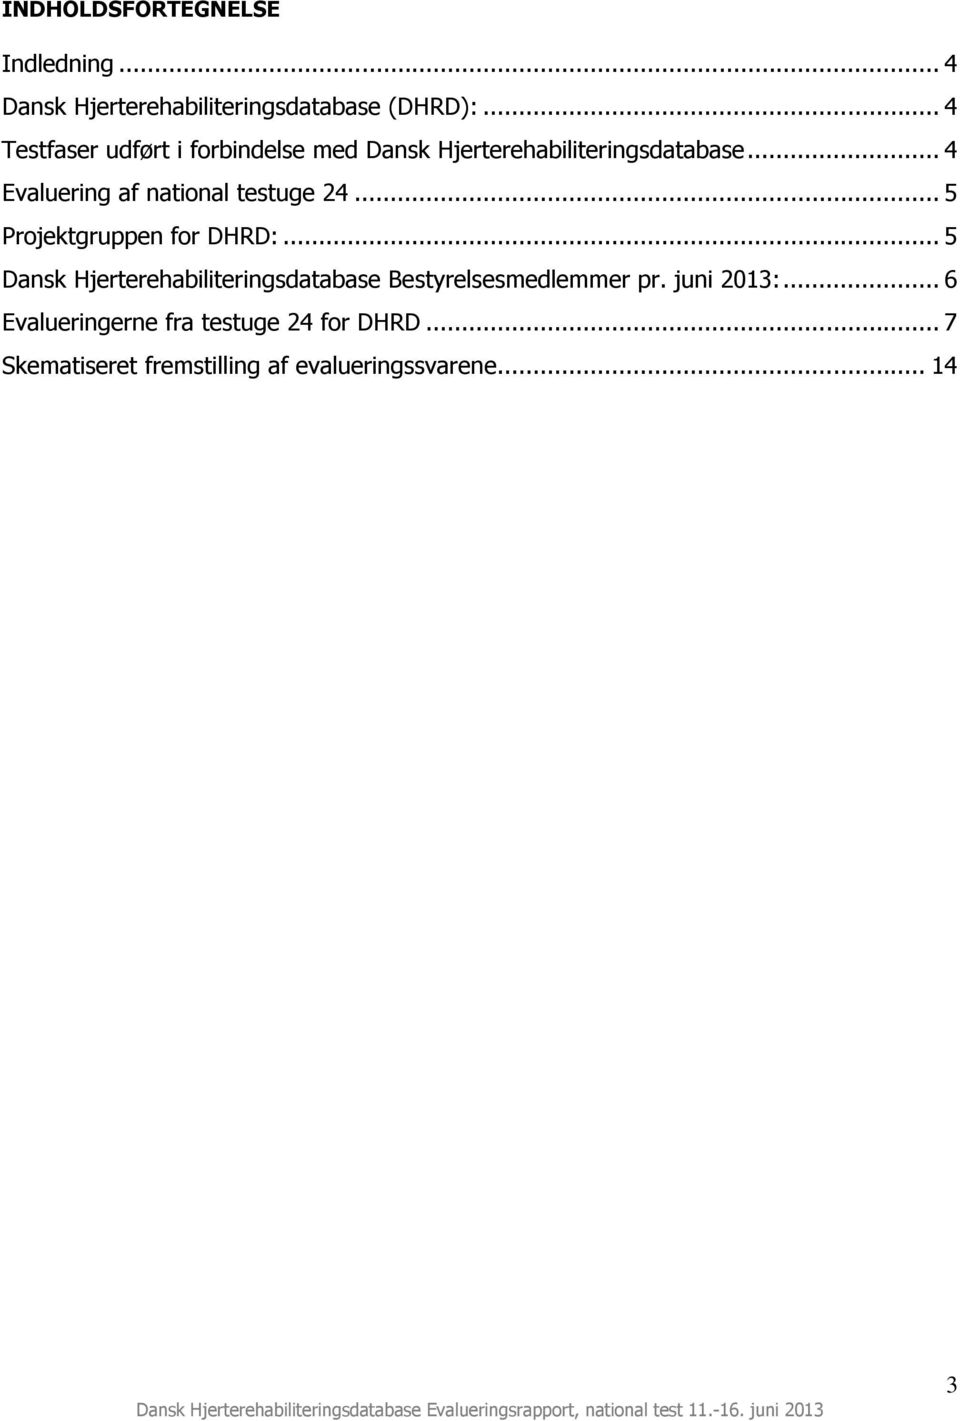 .. 5 Projektgruppen for DHRD:... 5 Dansk Hjerterehabiliteringsdatabase Bestyrelsesmedlemmer pr. juni 2013:.